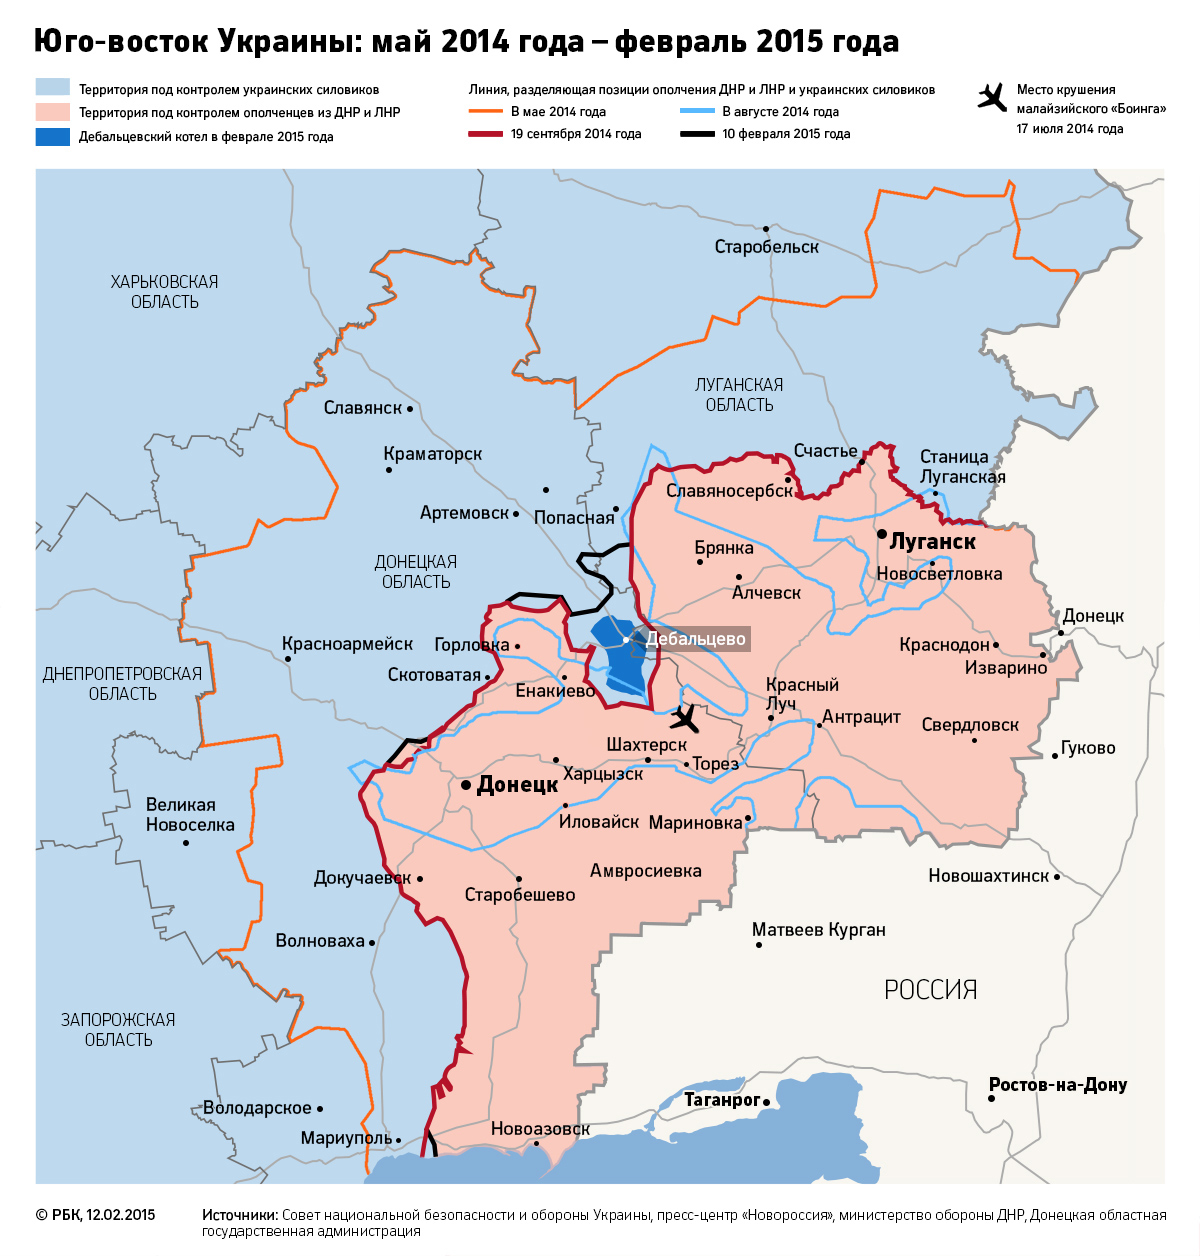 «Нормандский мир»: какие разногласия были преодолены к саммиту в Минске